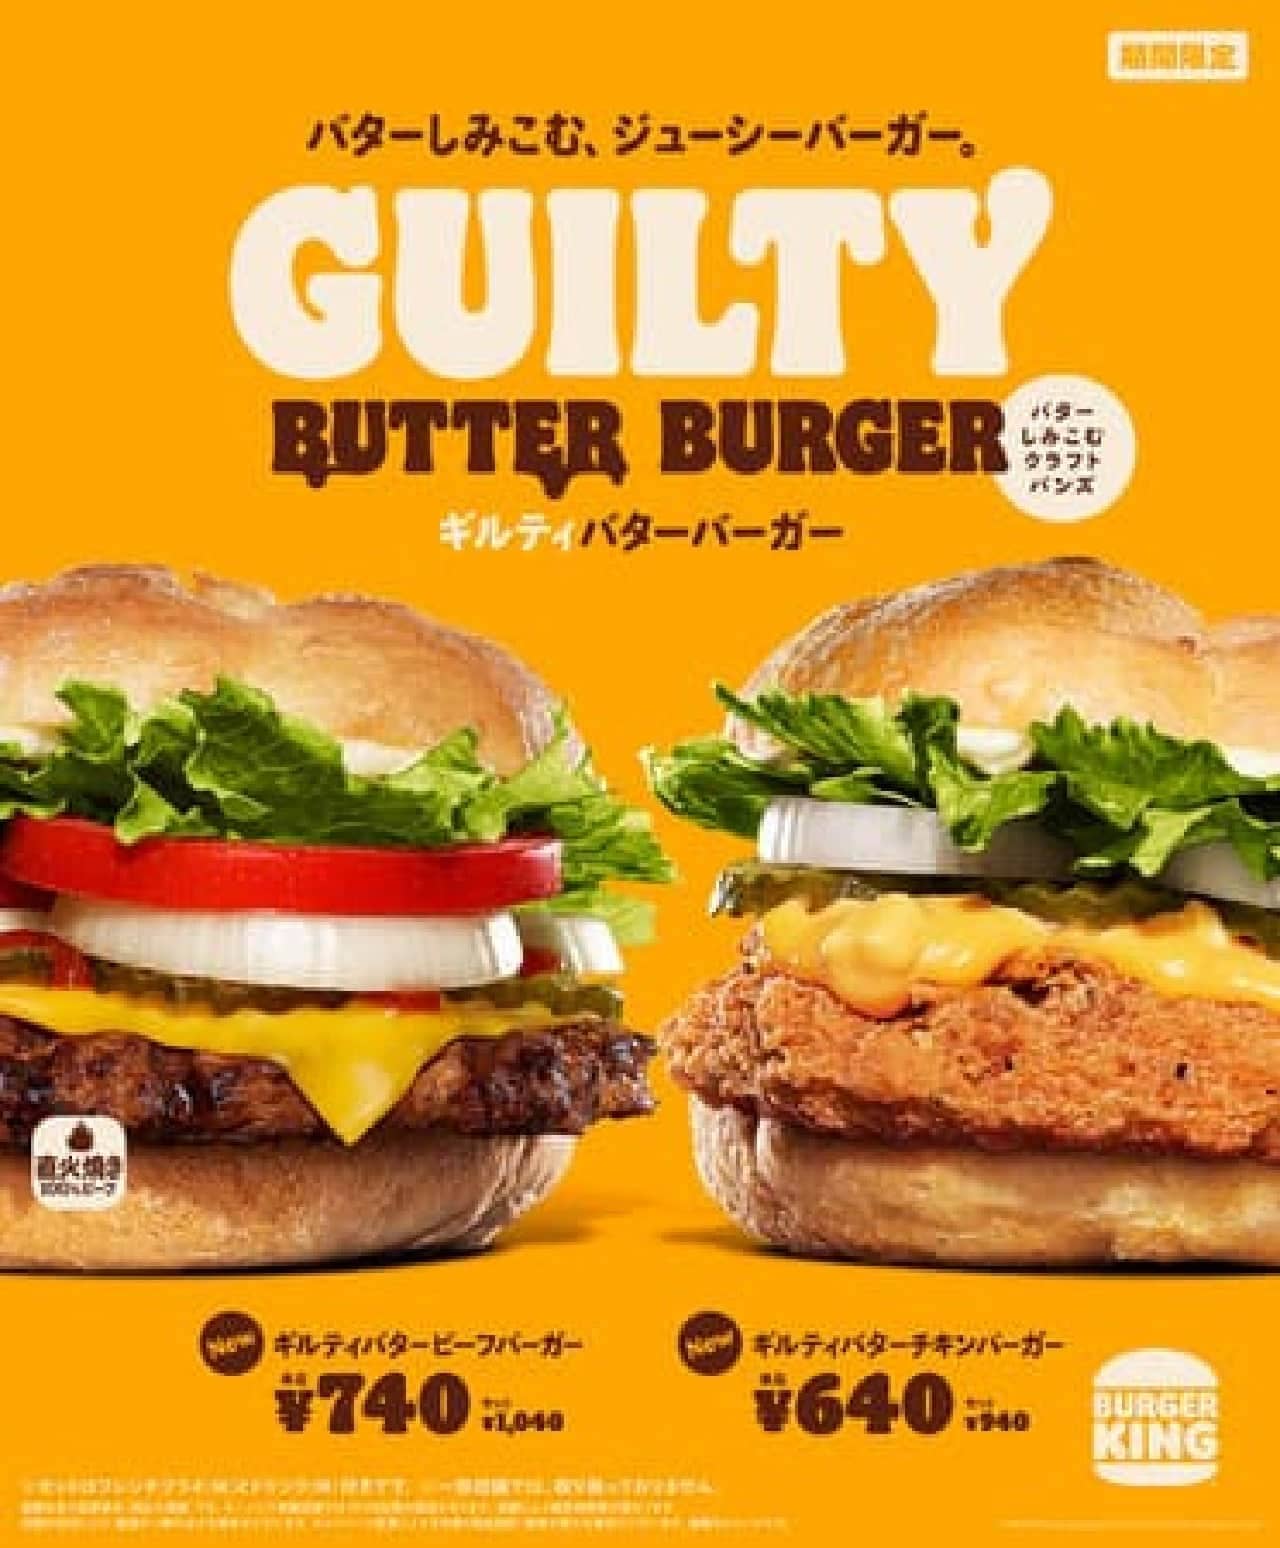 Burger King Guilty Butter Burger